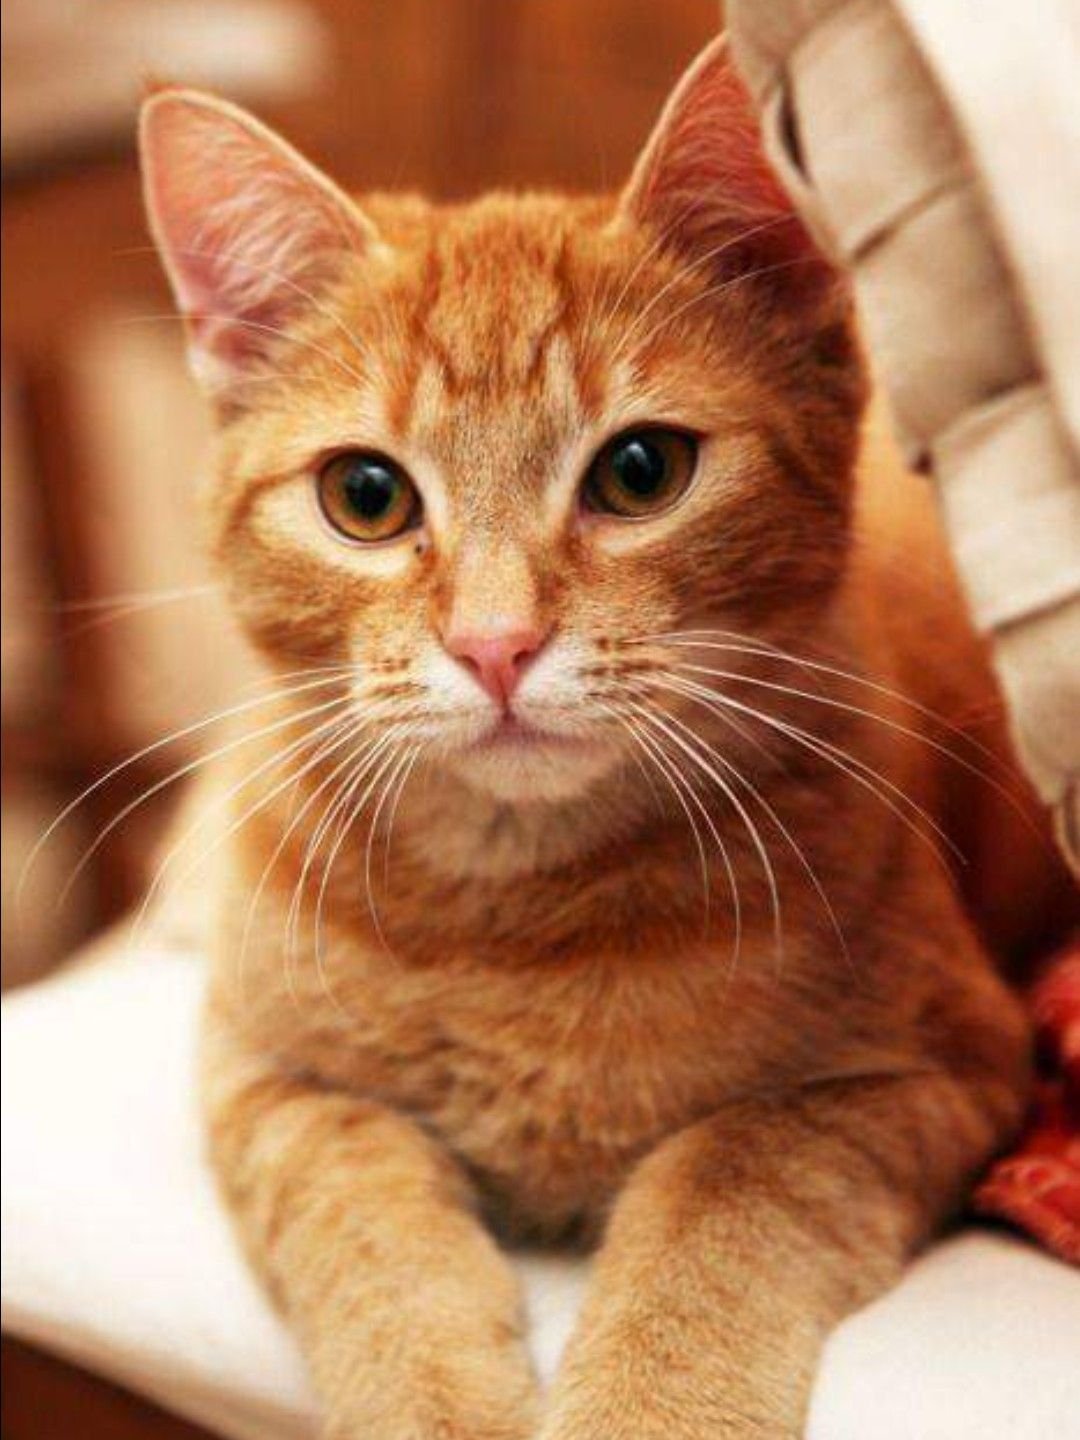 Породы кошек с рыжими глазами. Европейский короткошерстный кот рыжий. Европейская короткошерстная табби рыжий. Европейская короткошерстная кошка рыжая. Цейлонская короткошерстная кошка рыжая.